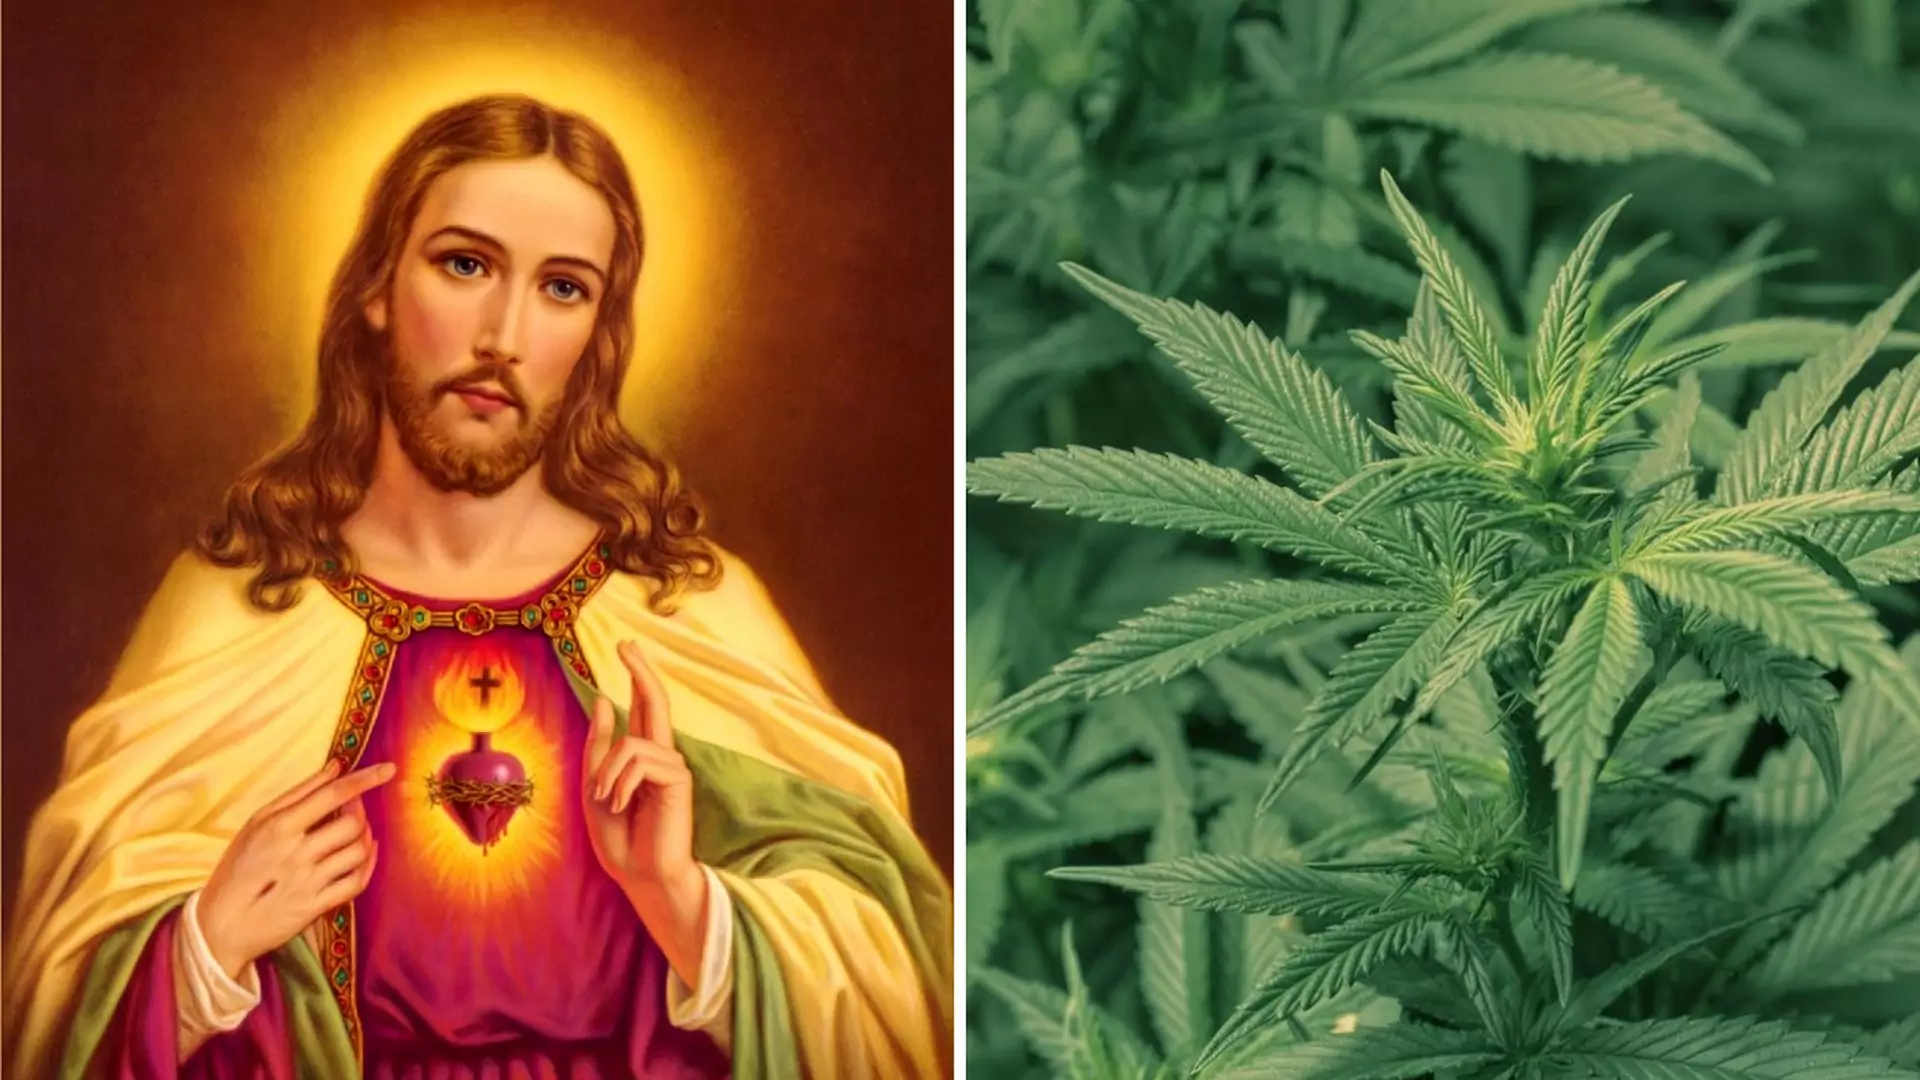 Jezus dokonywał "cudów" dzięki marihuanie? Tak twierdzą historycy